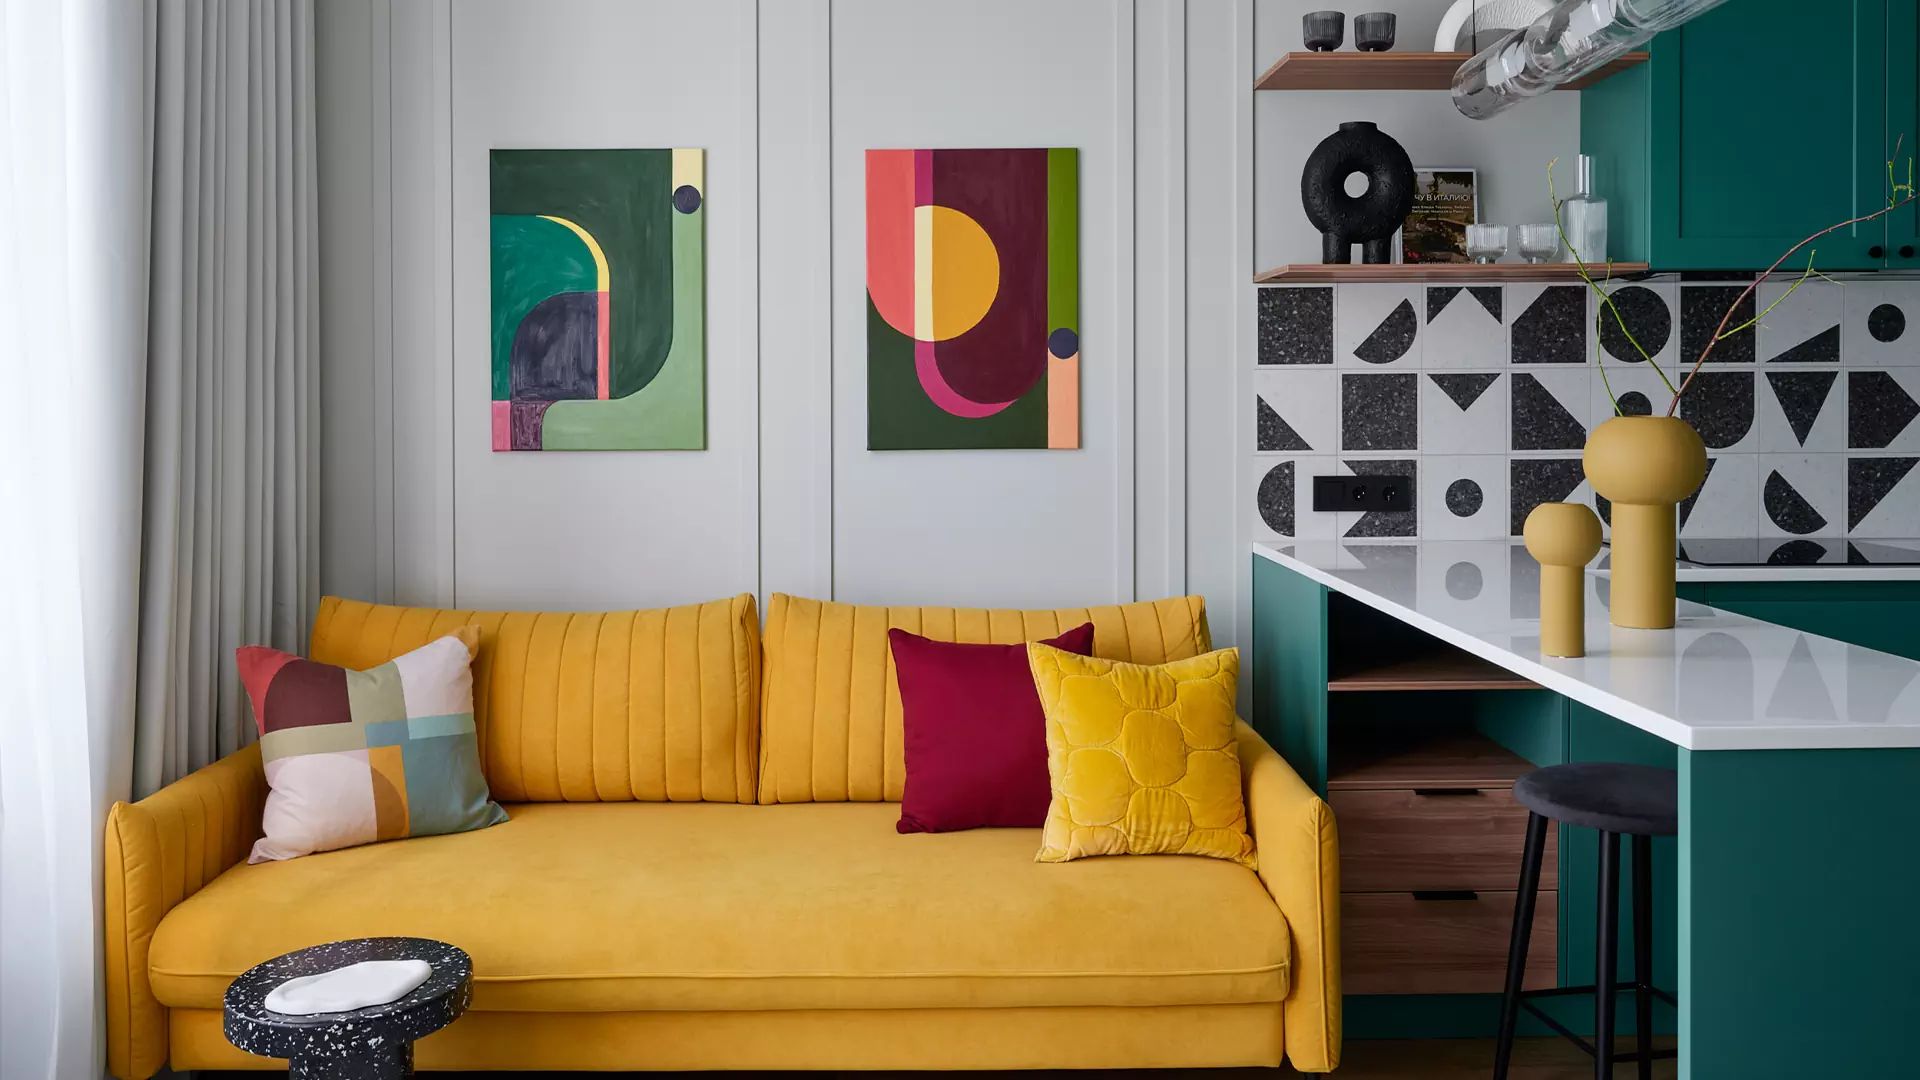 Цвет, геометрия и уютный текстиль в интерьере красочной квартиры для молодой девушки – проект студии Gench Design